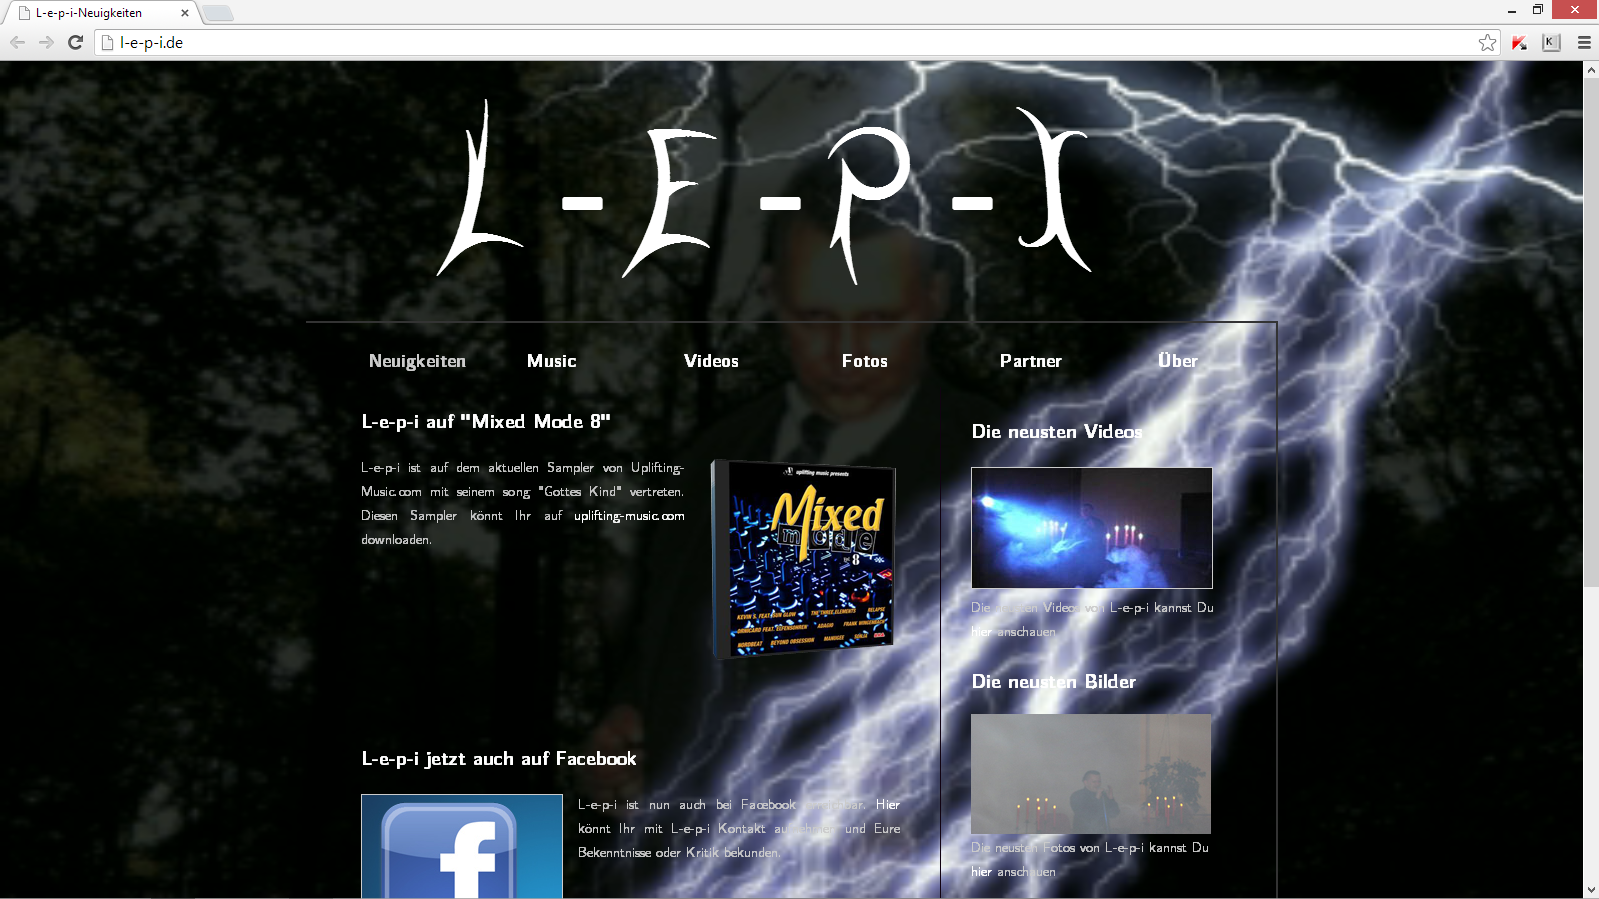 Website von L-e-p-i - beim klick kommen Sie auf die Website der Band L-e-p-i, die ich erstellt habe.